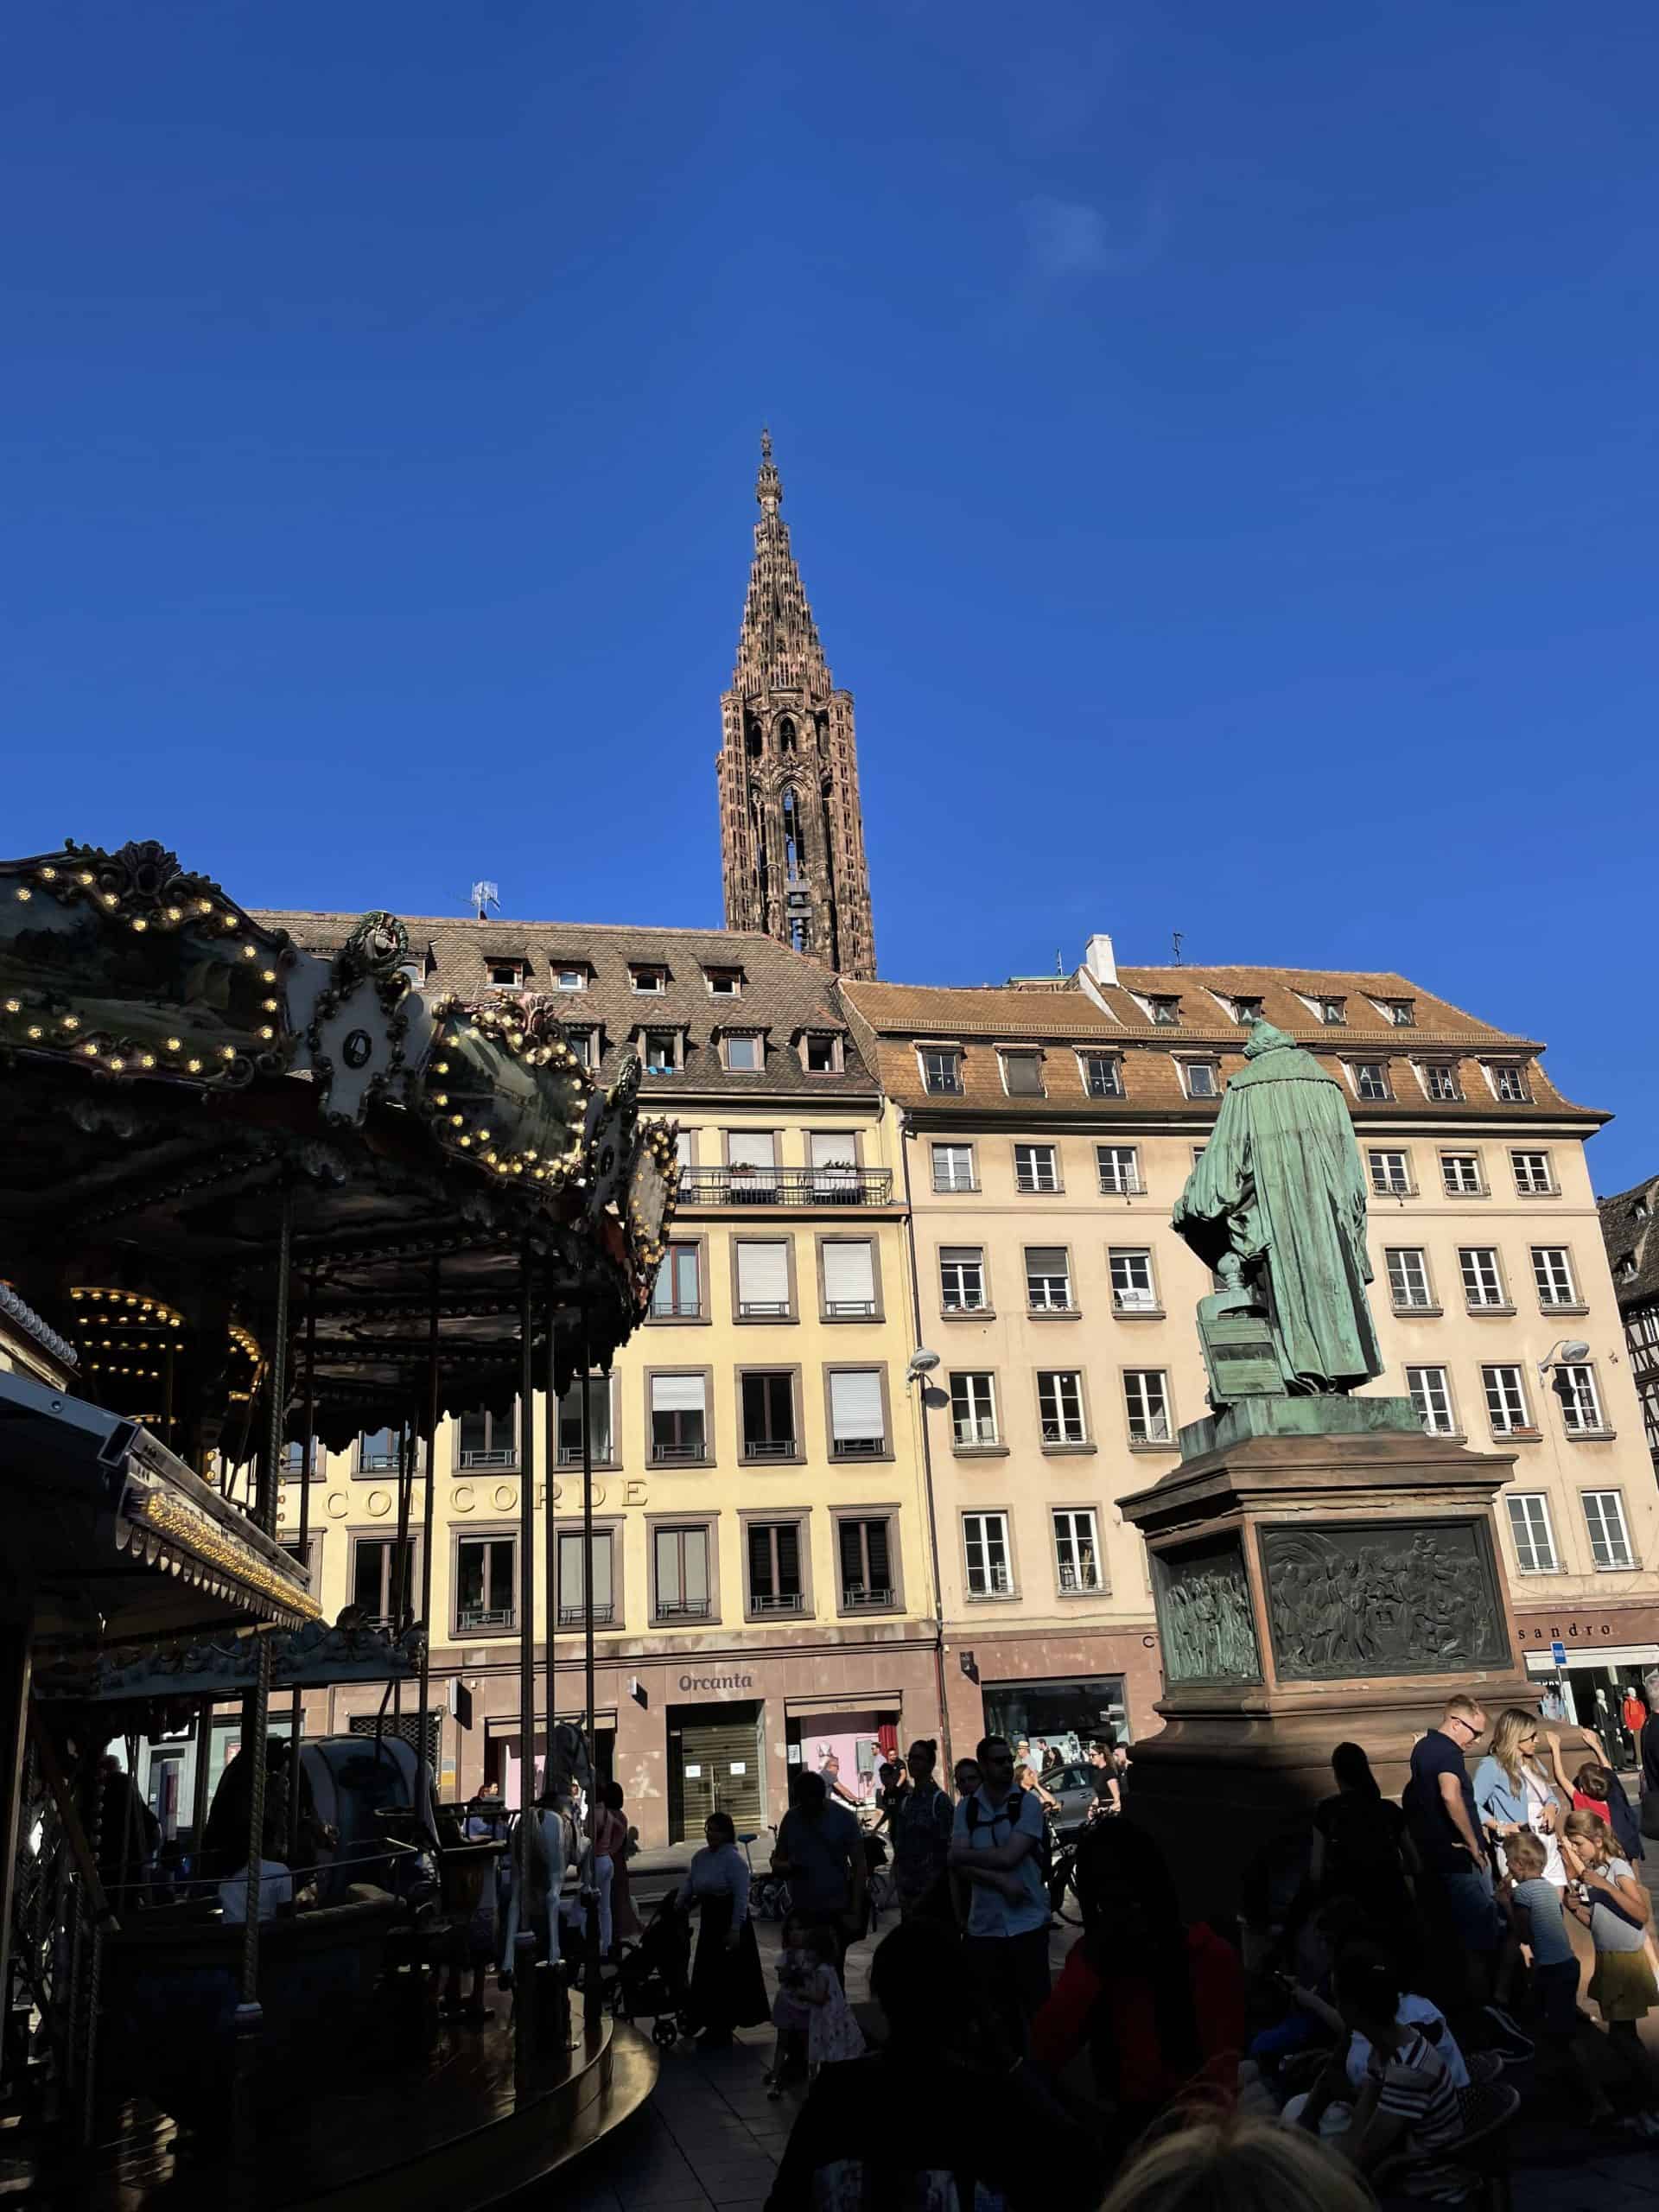 Platz mit Statue, im Hintergrund Spitze des Straßburger Münster